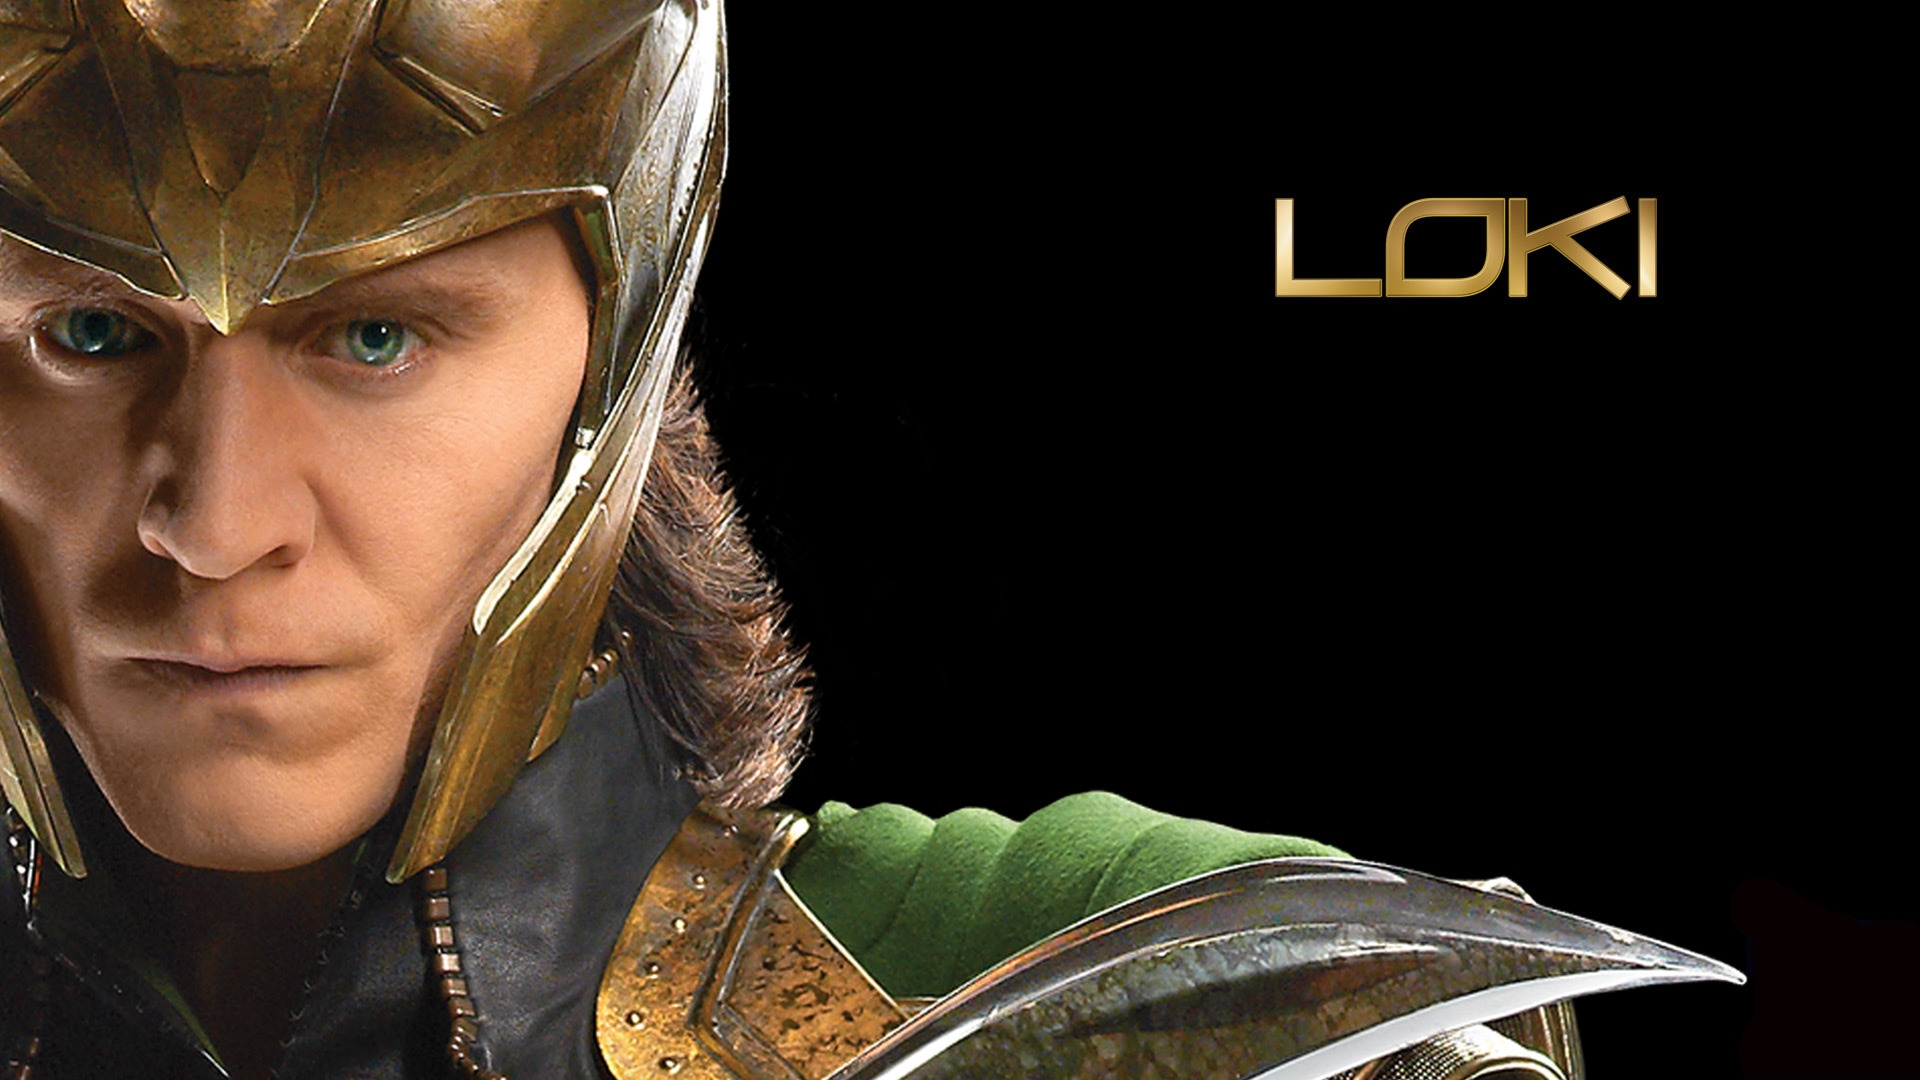 The Avengers Loki for 1920 x 1080 HDTV 1080p resolution